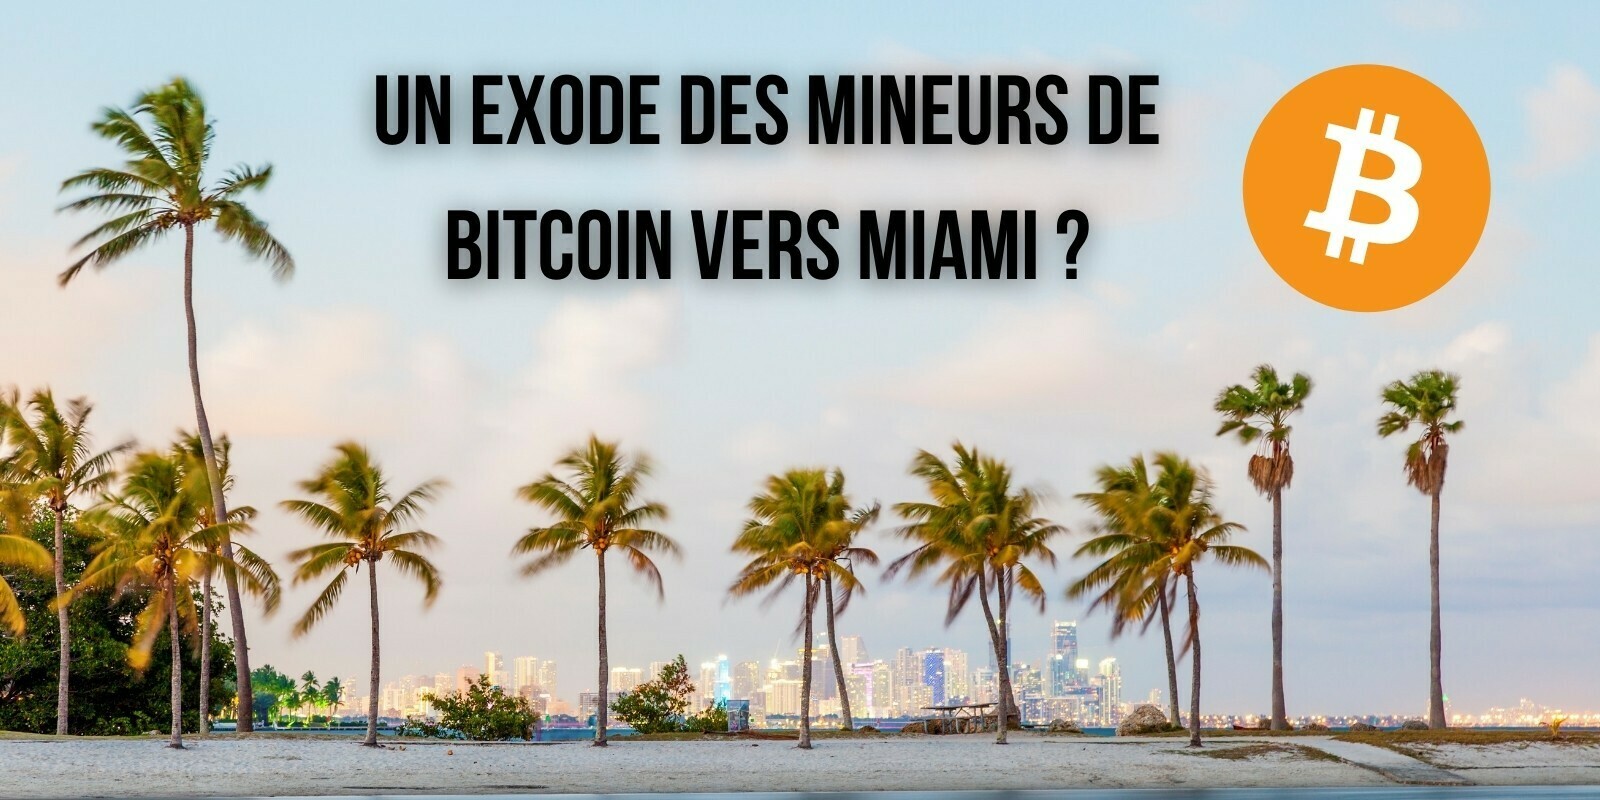 Le maire de Miami invite les mineurs de Bitcoin à profiter de l'« énergie propre » de sa ville